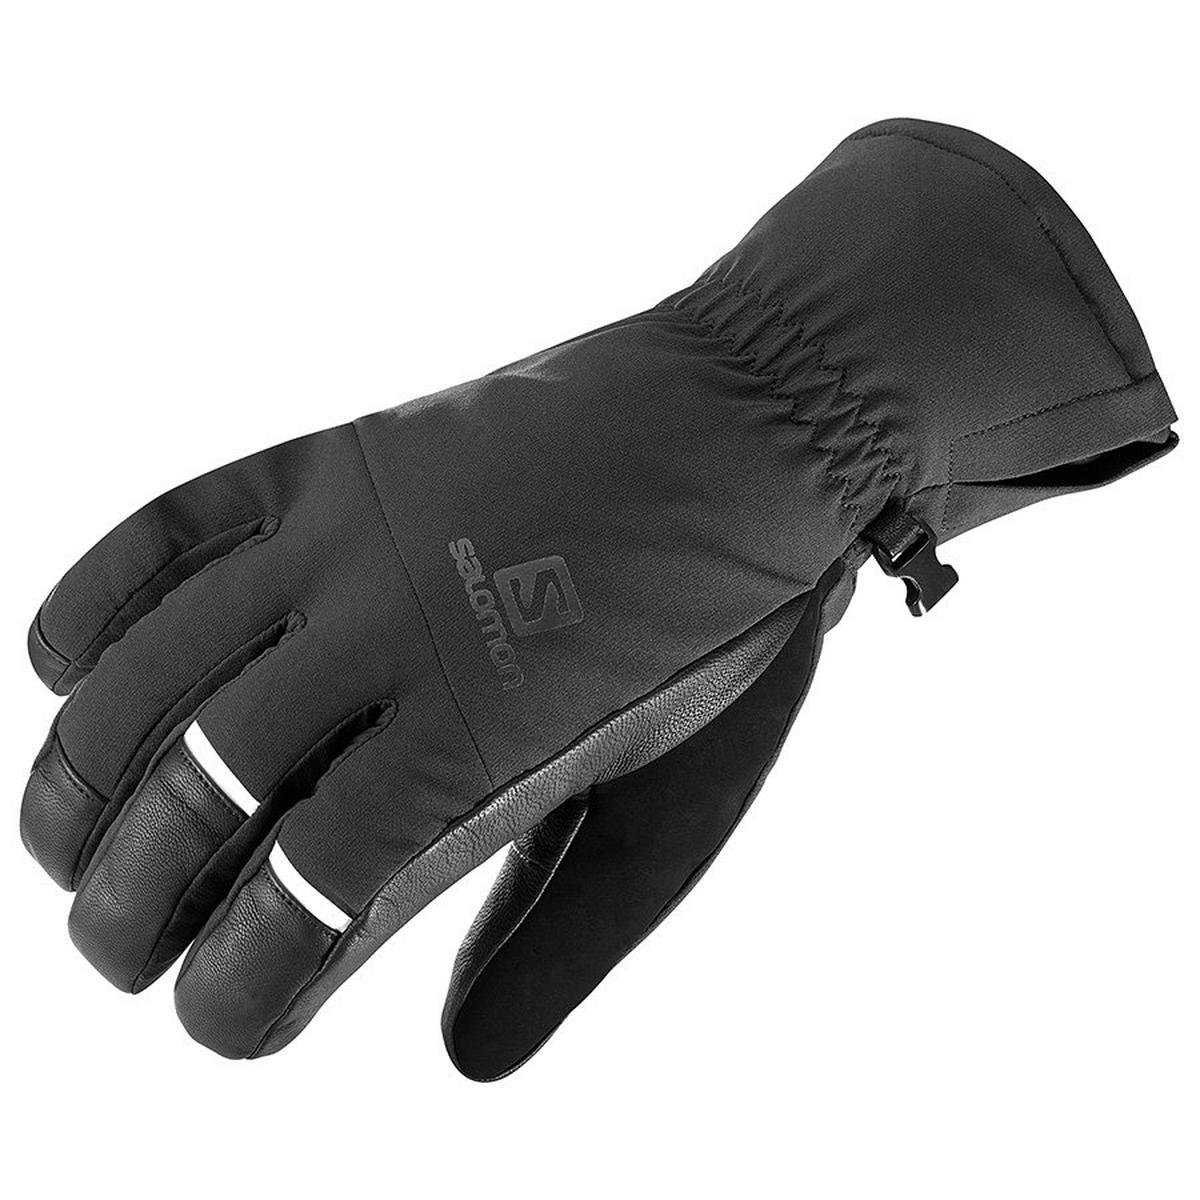 Salomon Men's Propeller Dry Gloves